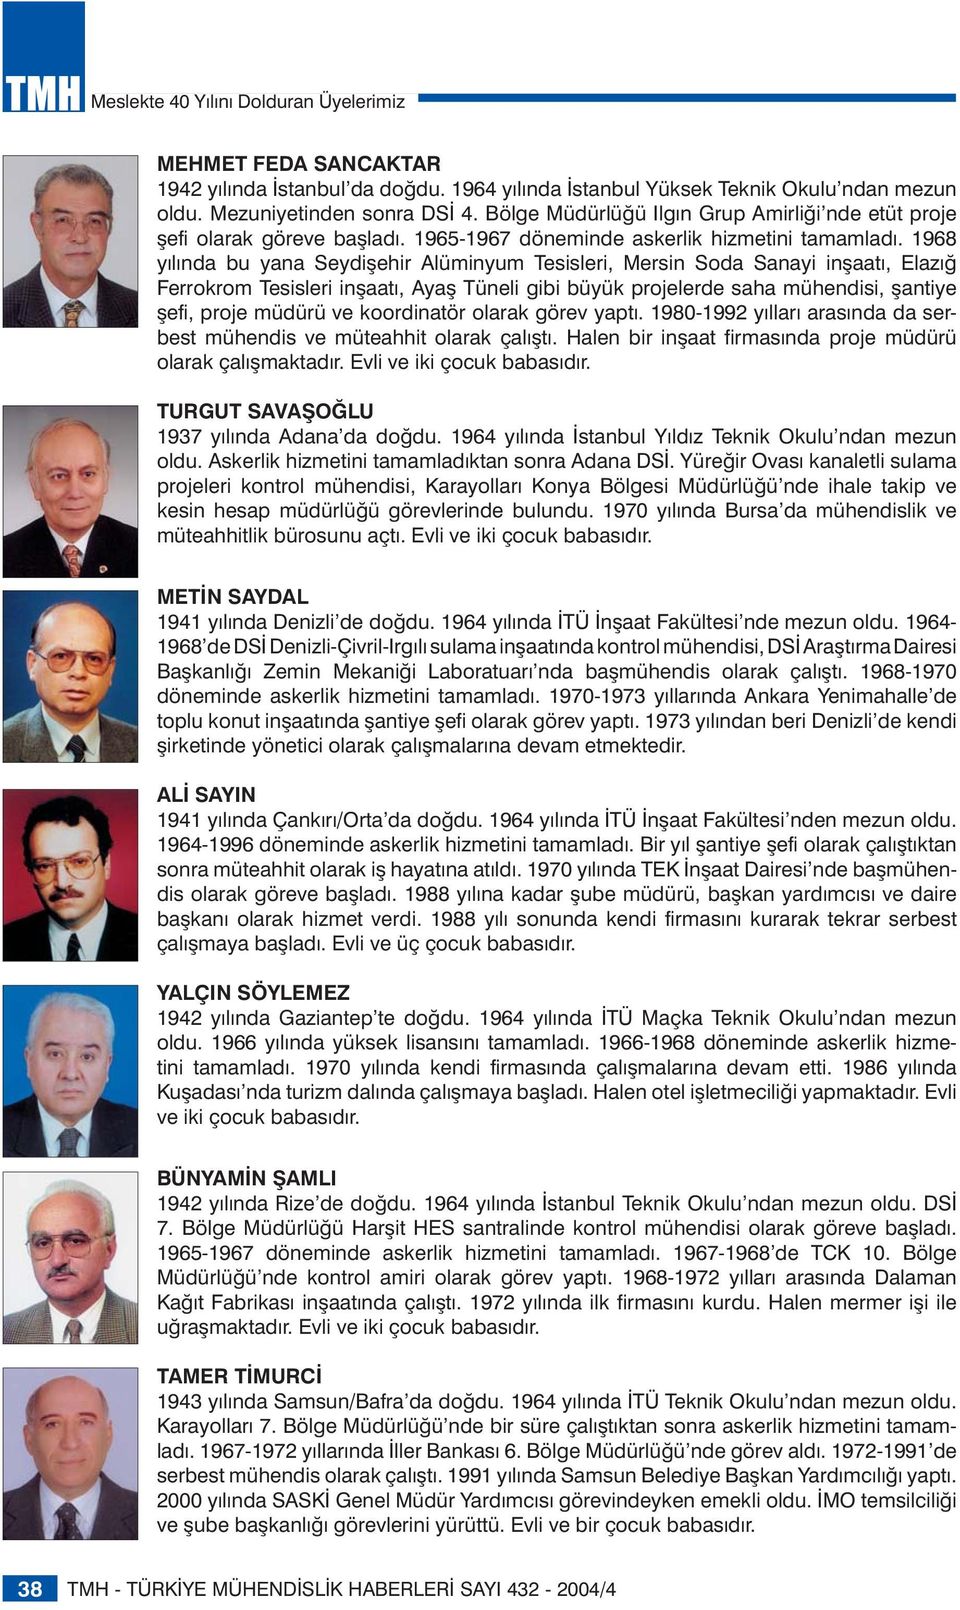 1968 yılında bu yana Seydişehir Alüminyum Tesisleri, Mersin Soda Sanayi inşaatı, Elazığ Ferrokrom Tesisleri inşaatı, Ayaş Tüneli gibi büyük projelerde saha mühendisi, şantiye şefi, proje müdürü ve